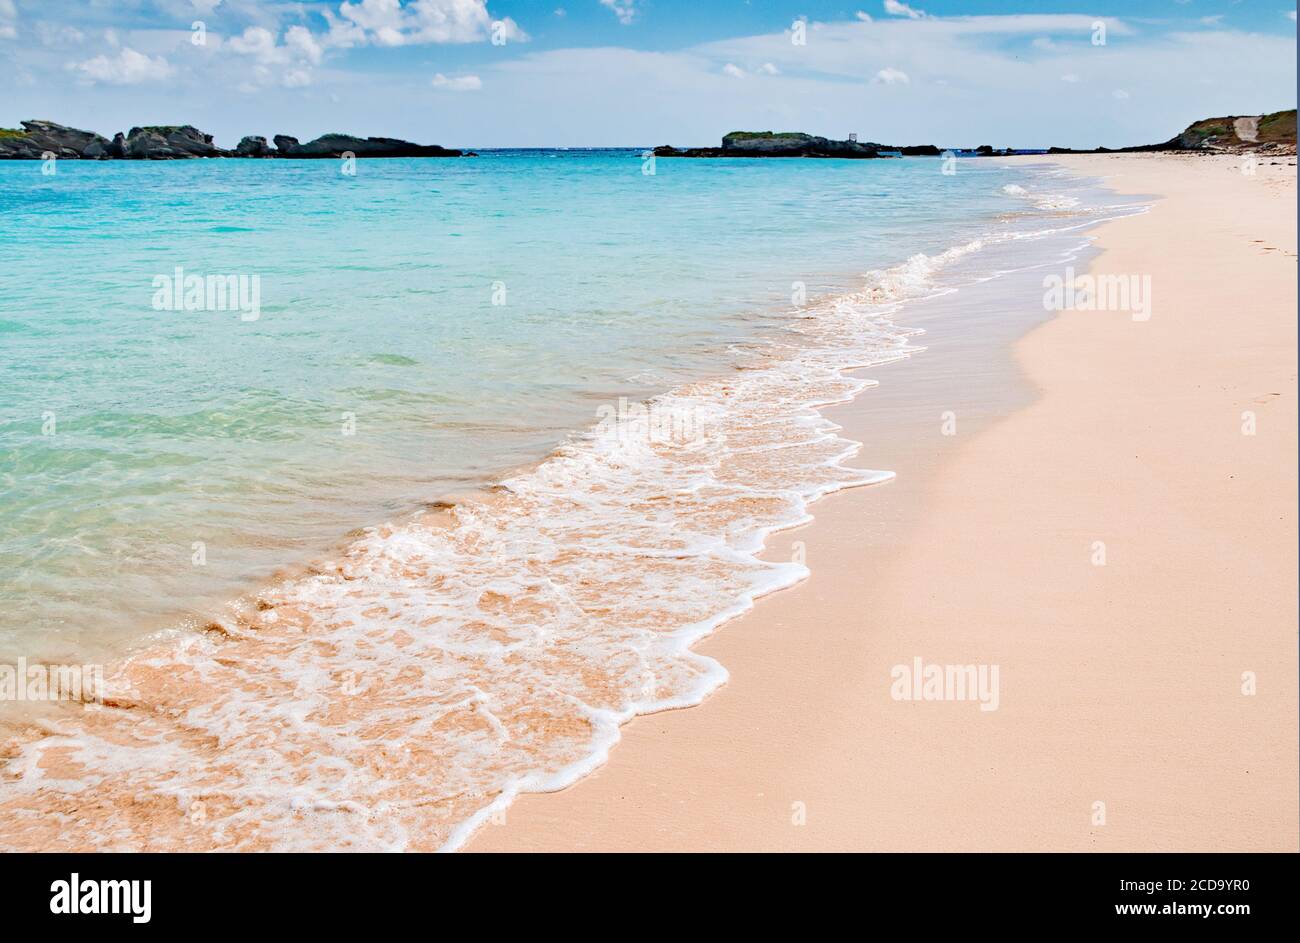 Plage de sable rose pittoresque bordée de vagues sur l'île de Copper, Bermudes Banque D'Images